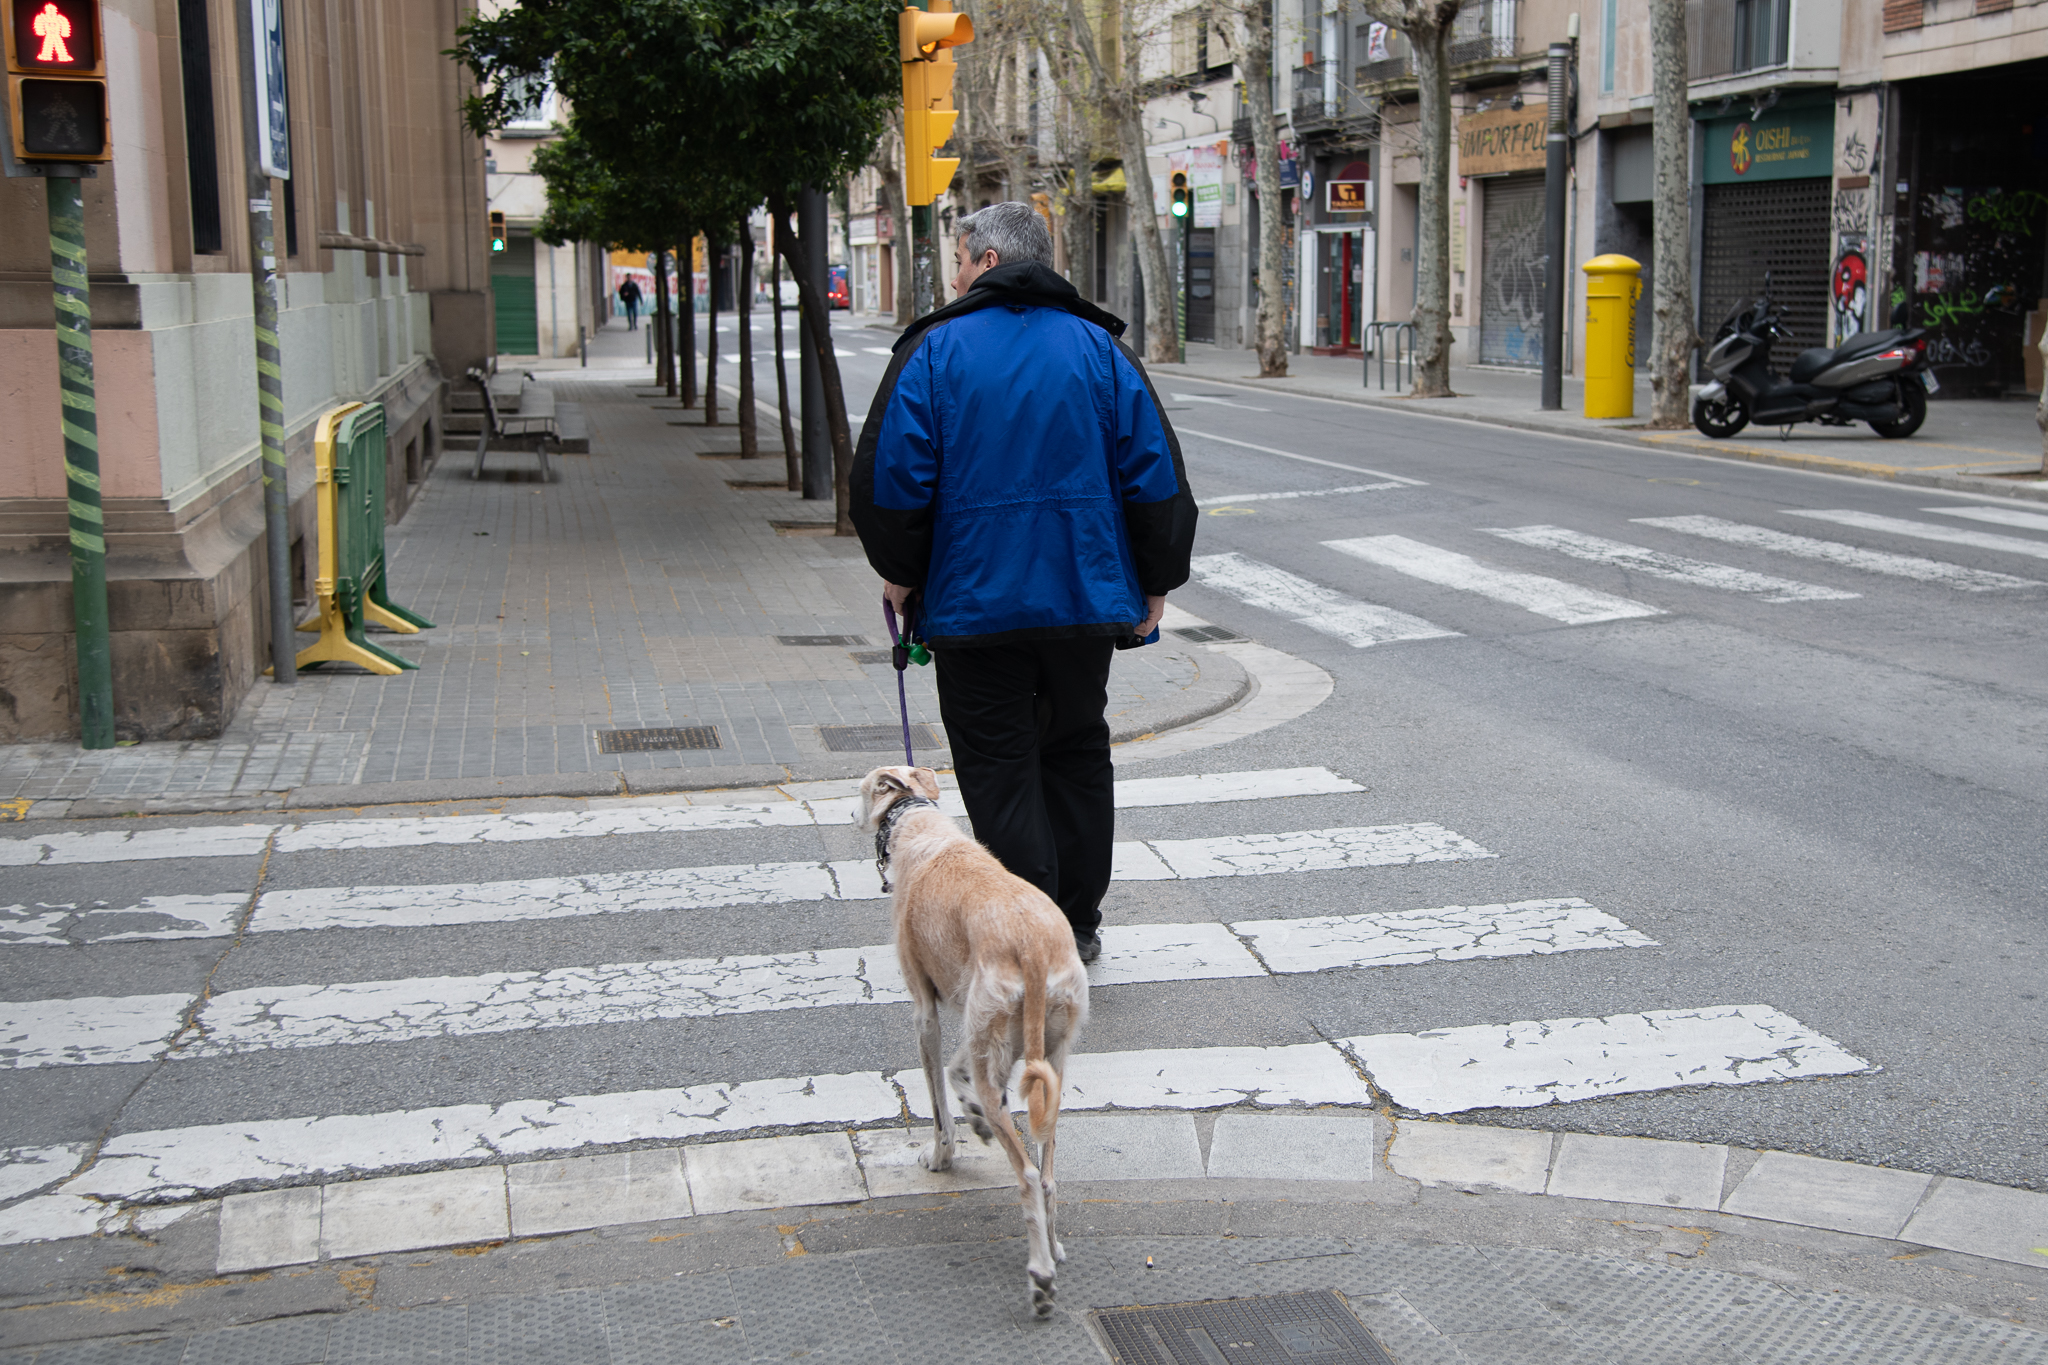 Tal com s'ha ordenat des del govern espanyol poques persones caminant al carrer perpassejar el gos o anar a buscar aliments | Roger Benet